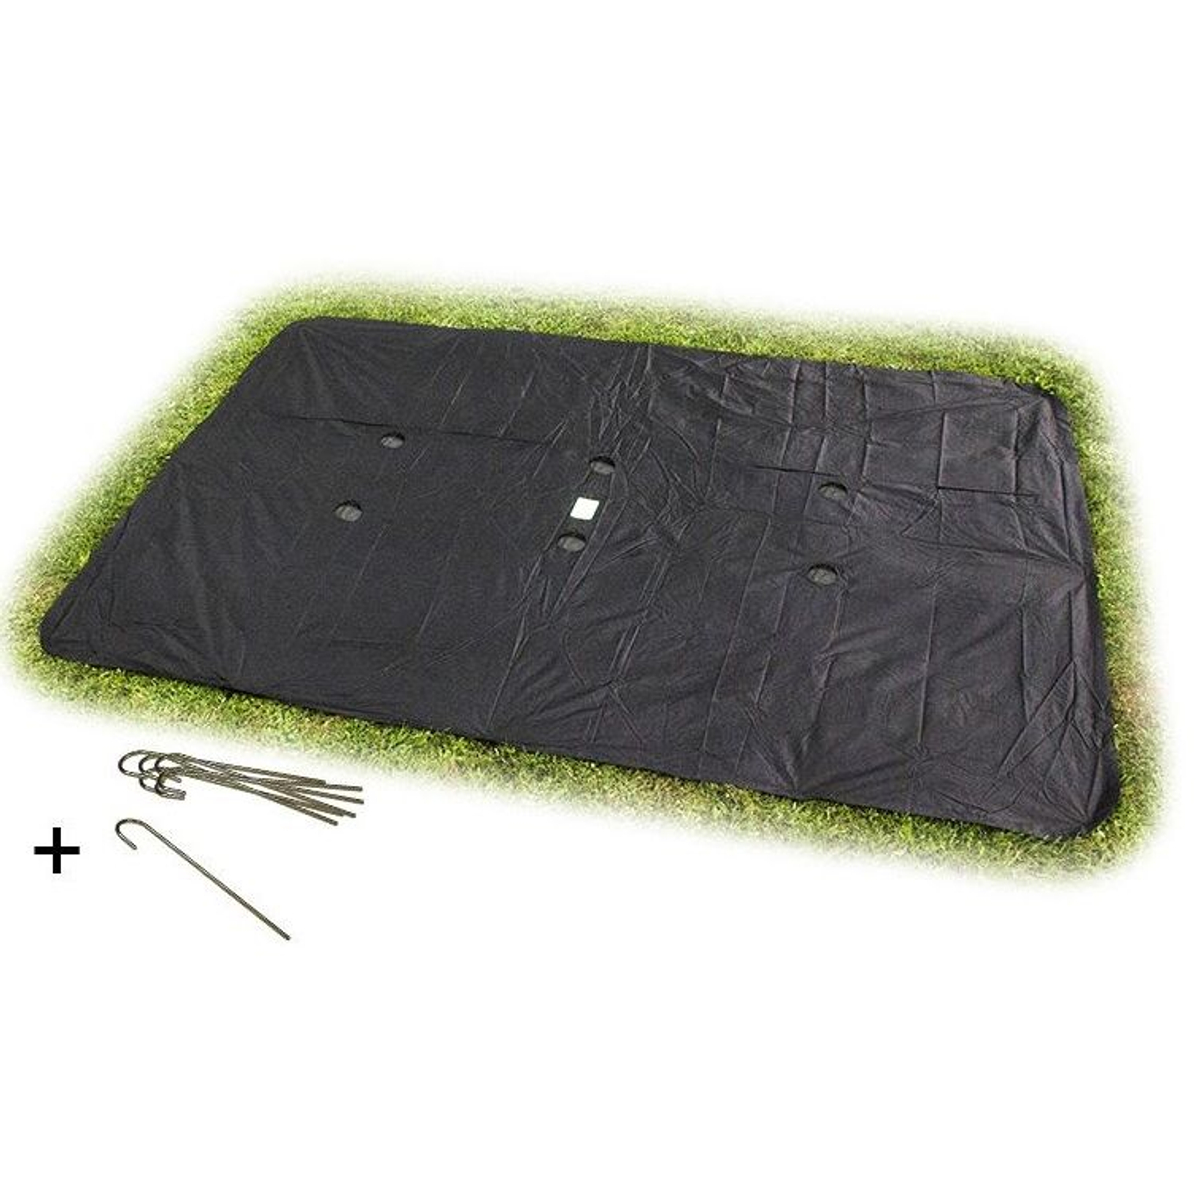 Housse de protection rectangulaire pour trampoline enterré niveau sol EXIT 244x427cm